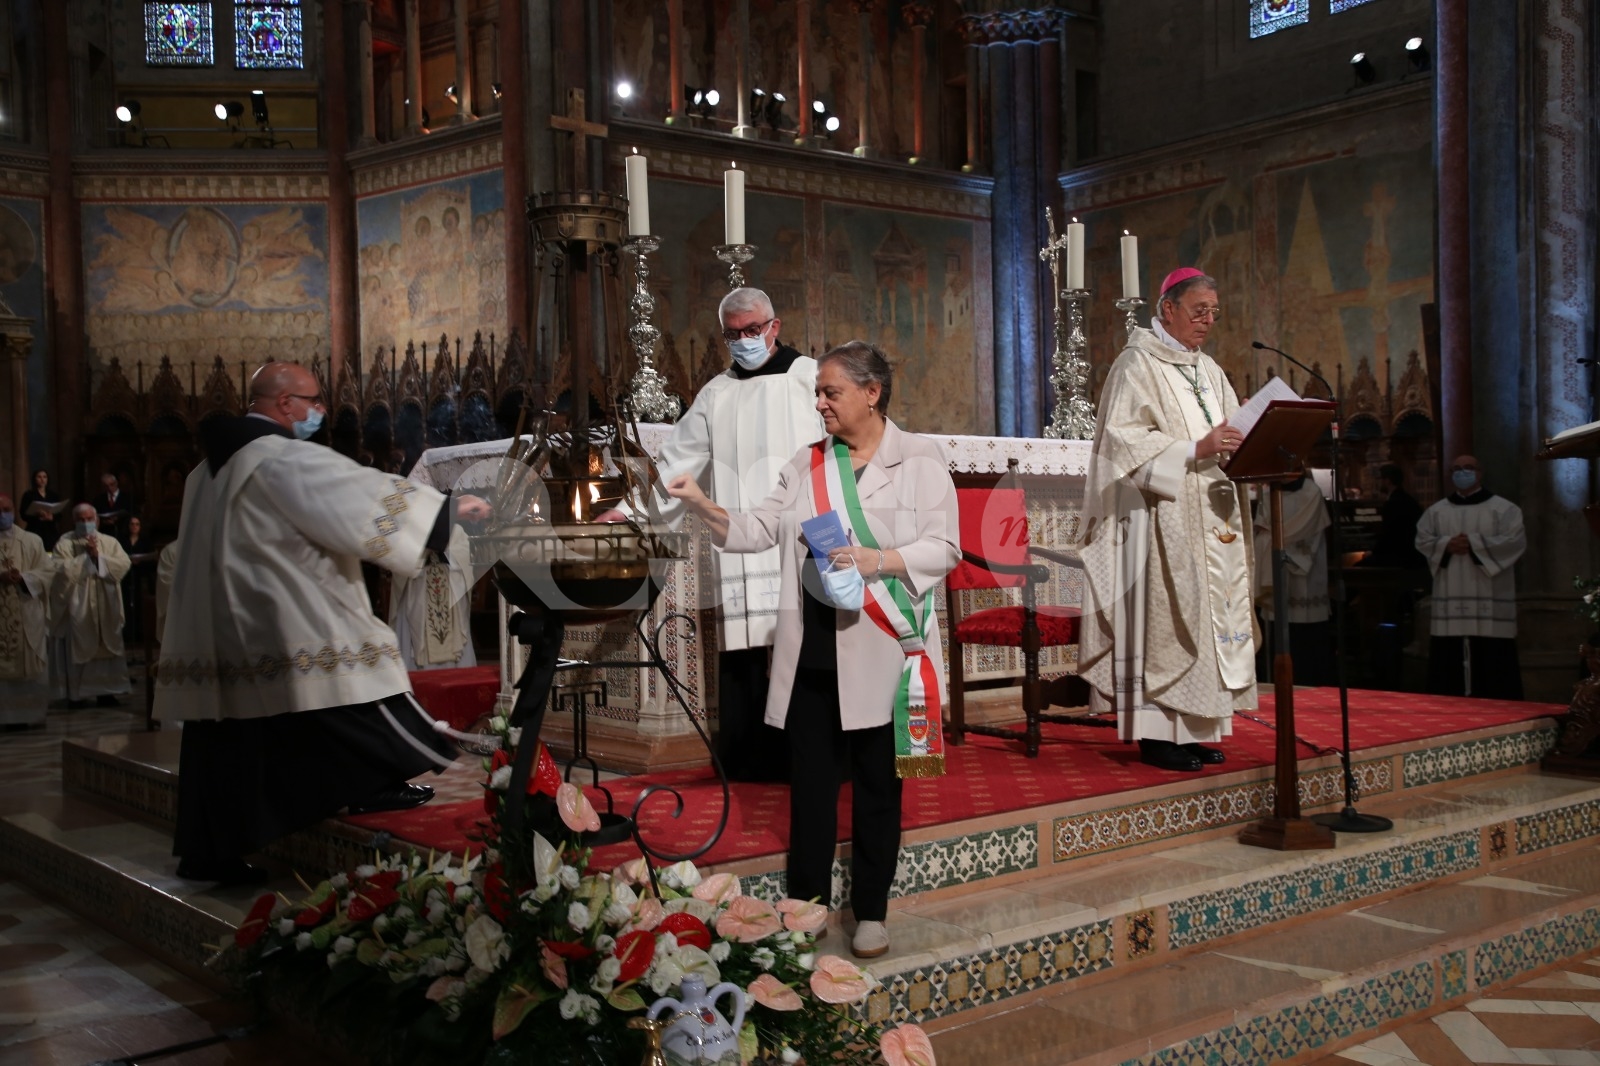 Festa di San Francesco 2020 ad Assisi, Coccia: “Italia necessita di un cambio di cultura” (foto+video)